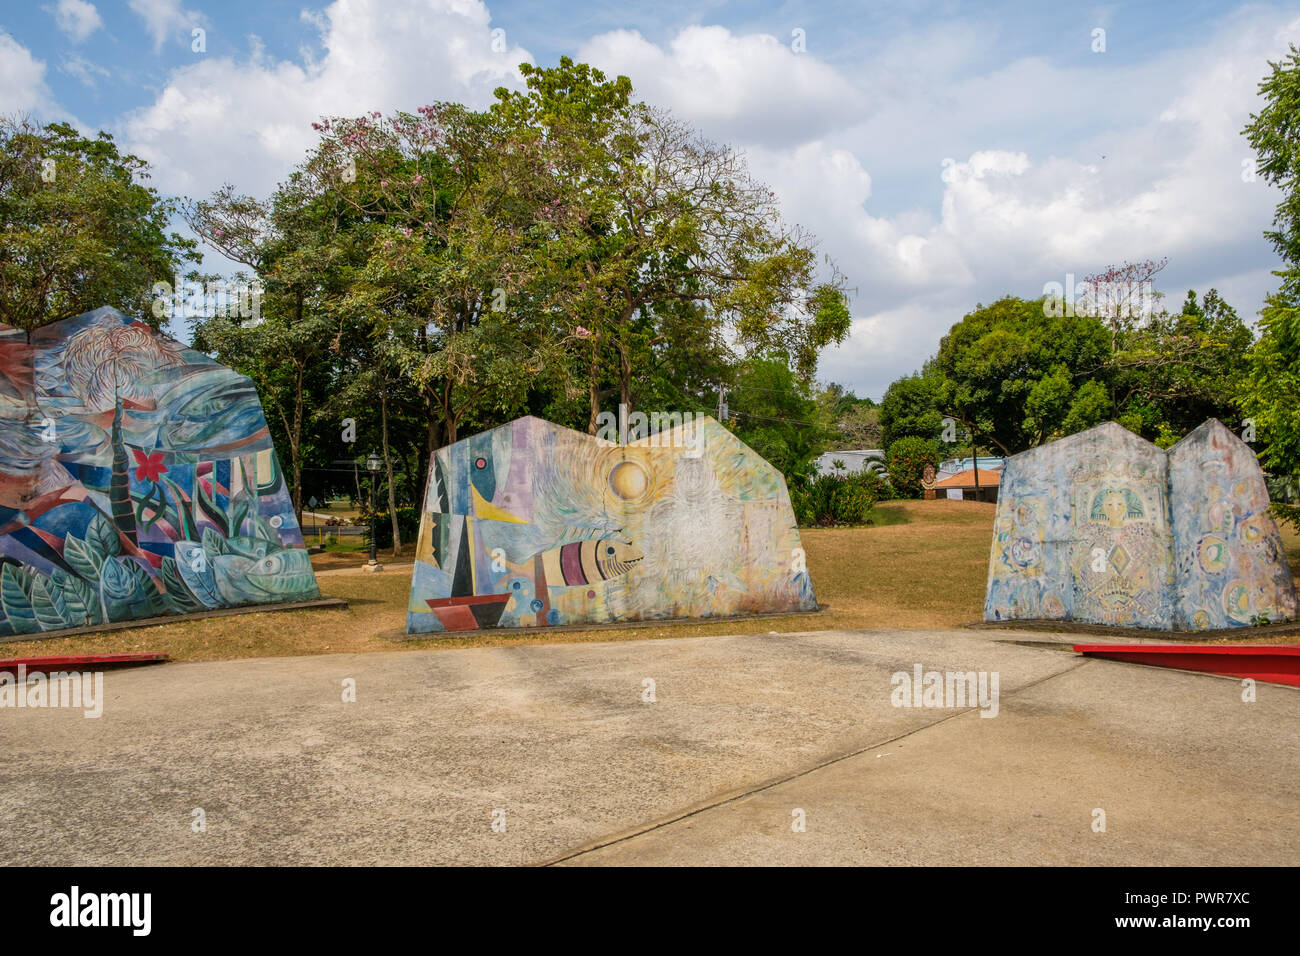 Ciudad de Panamá, Panamá - marzo 2018: Parque Omar, (Parque Omar) en el corazón de la Ciudad de Panamá, República de Panamá. Foto de stock